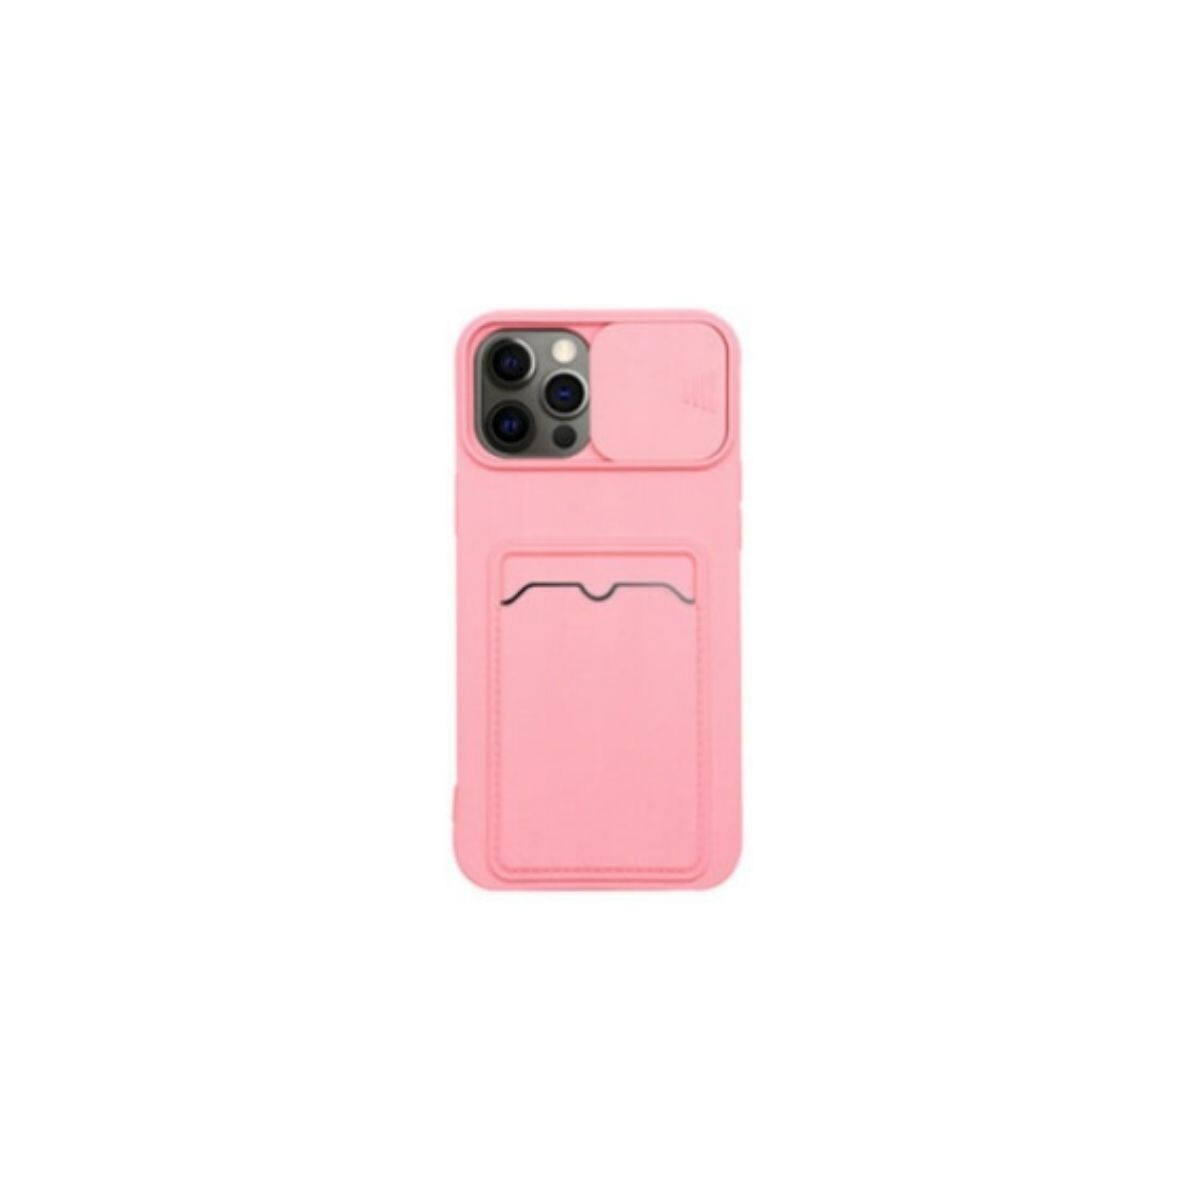 Protector cubre cámara para Samsung A02 rosa 